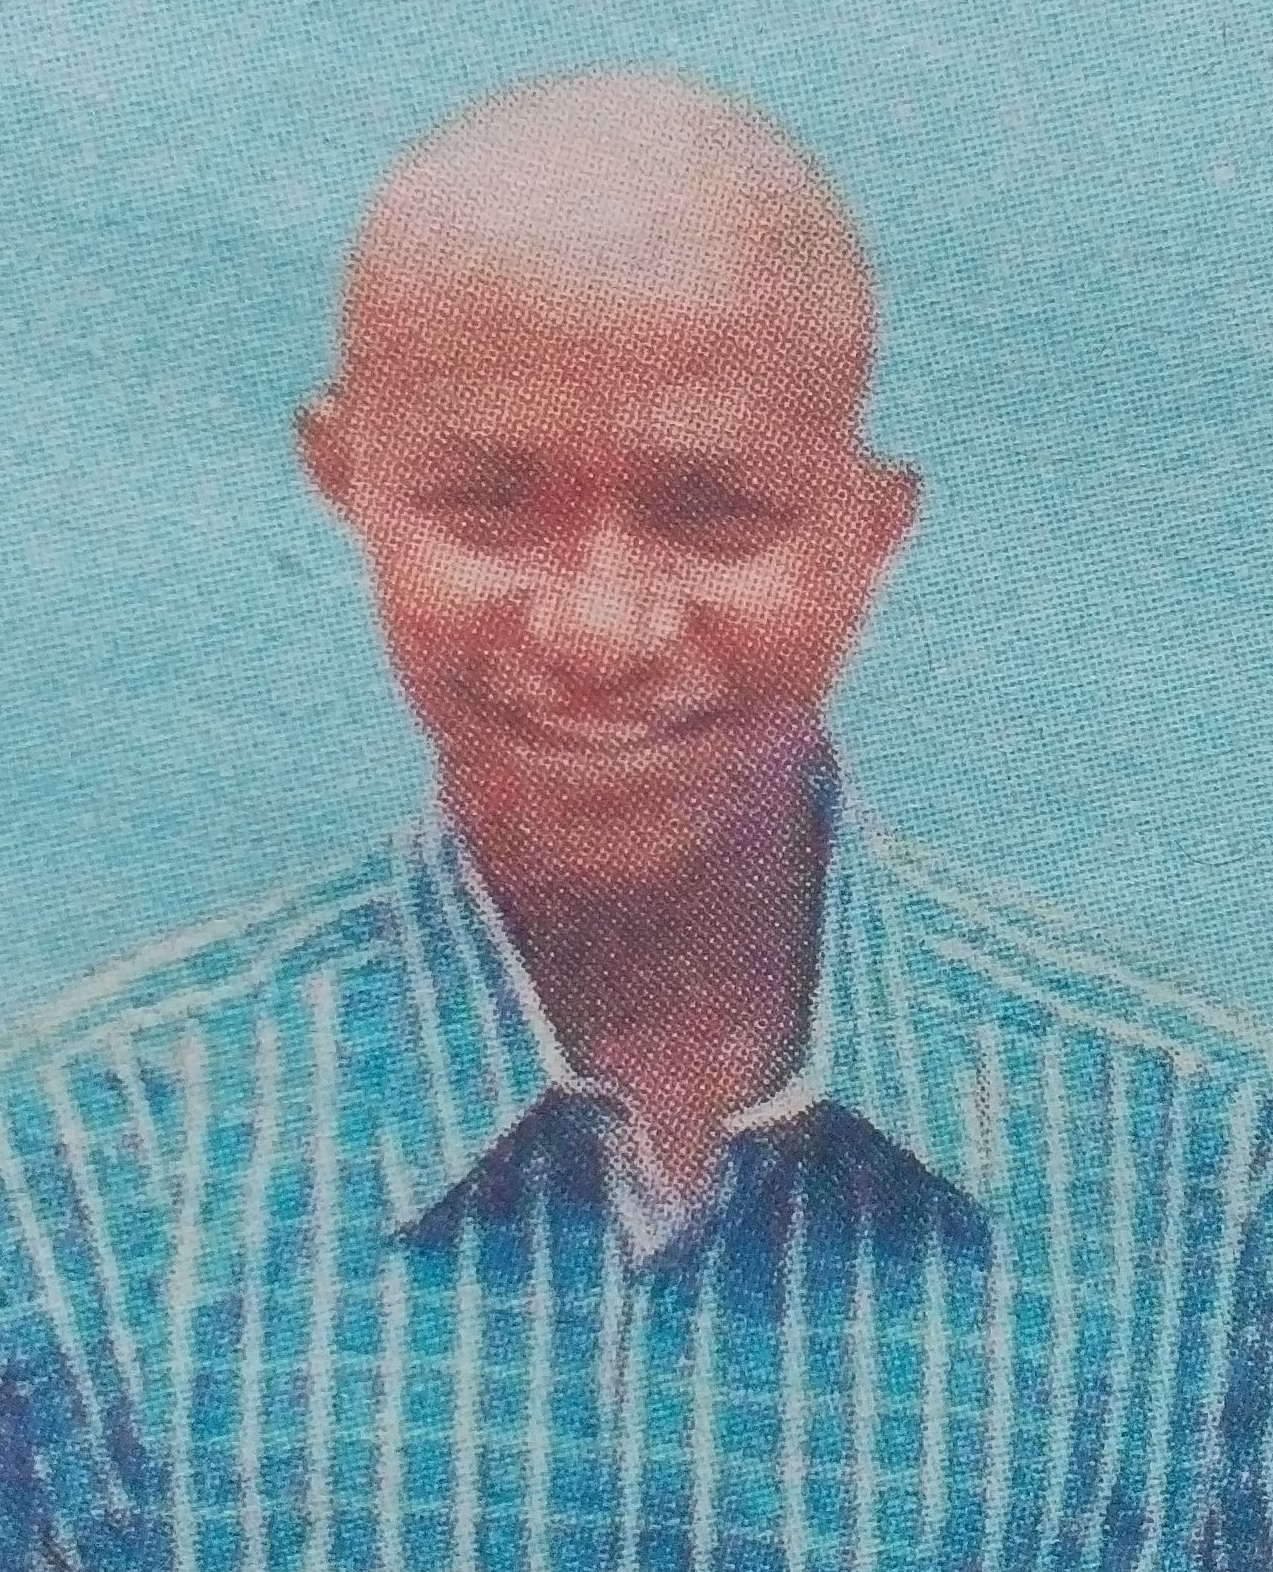 Obituary Image of Rabson Makau Manthi